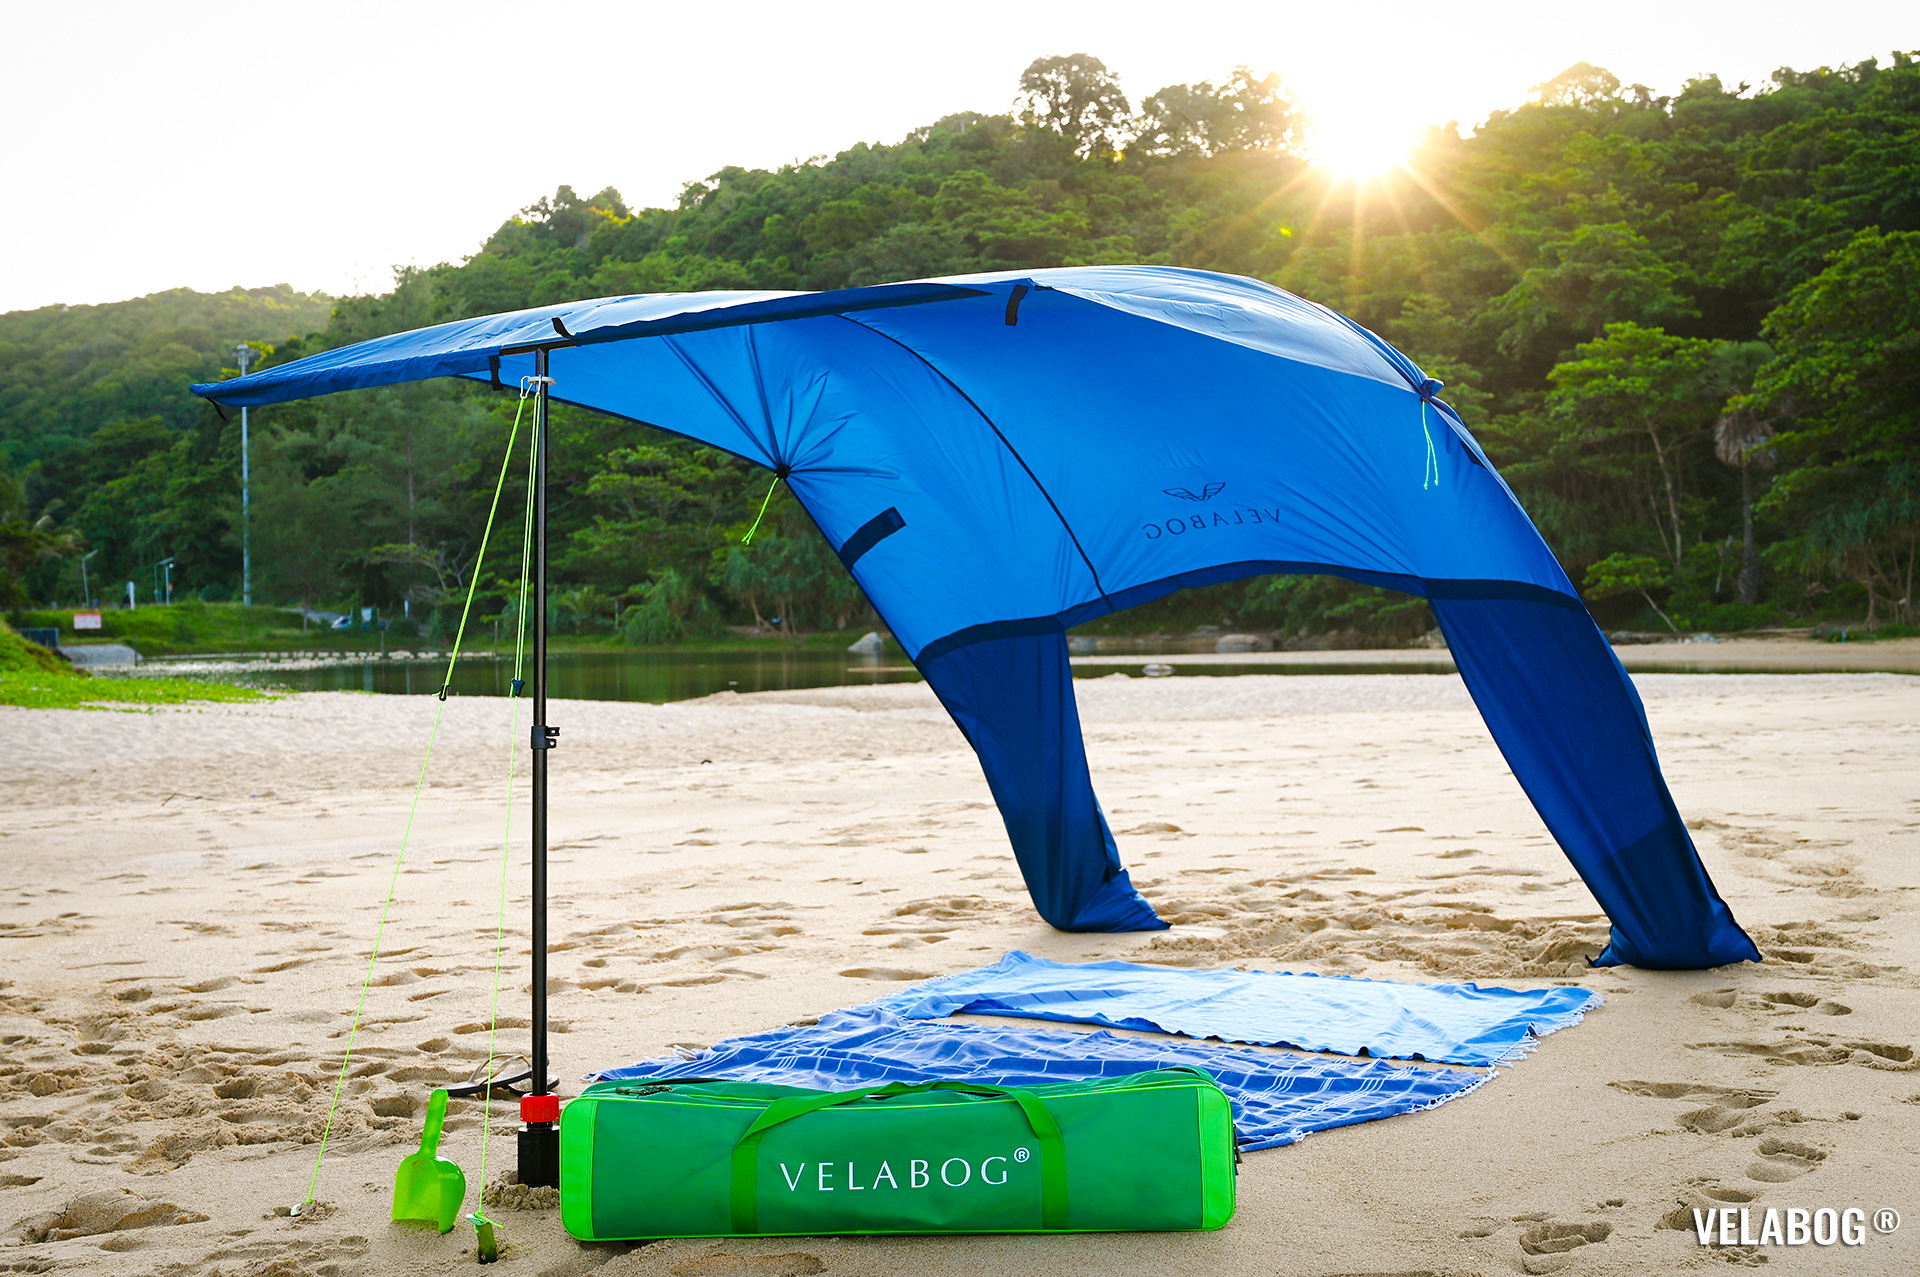 Солнечный парус Velabog «Breeze» синий. Высокое и не душное укрытие от солнца на пляже. Вариант установки при слабом или сильном ветре. Вид спереди.